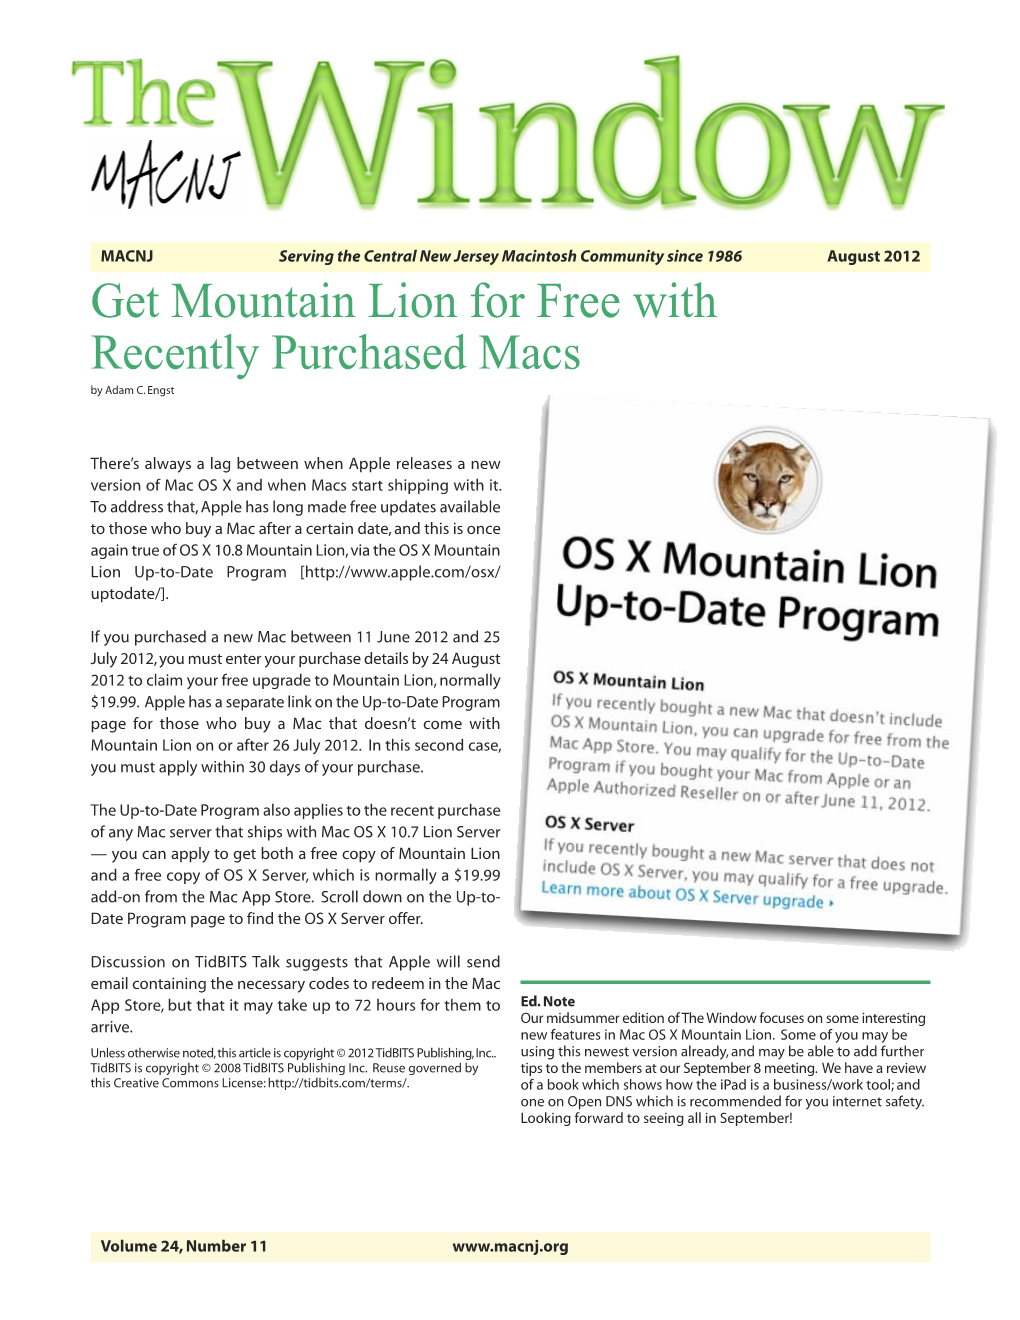 MACNJ the Window Newsletter